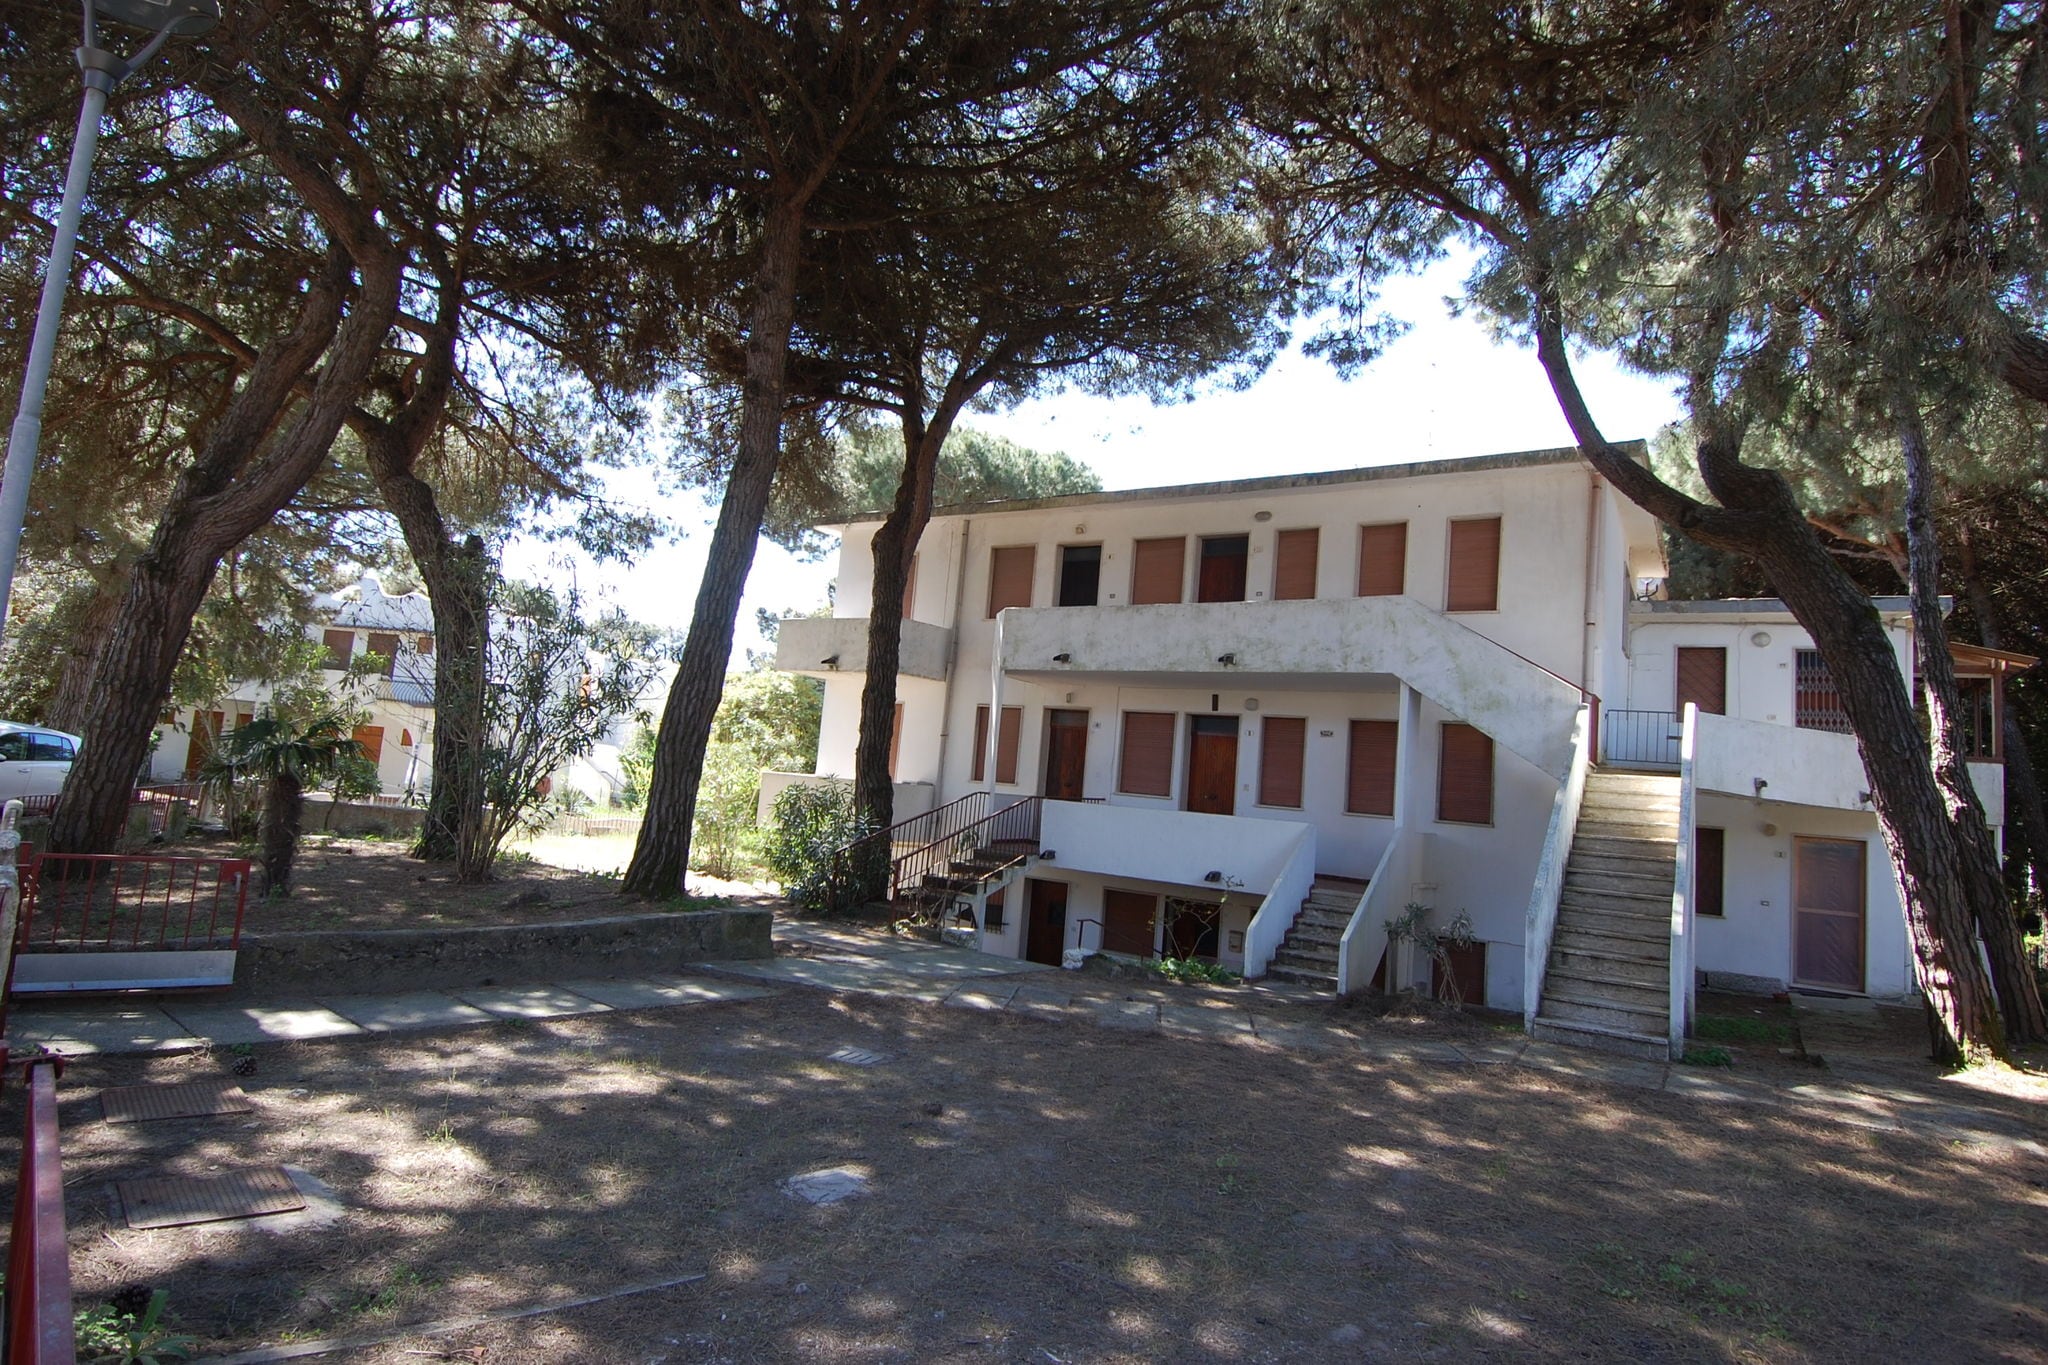 Stilvolles Apartment in Rosolina Mare an der Adriaküste